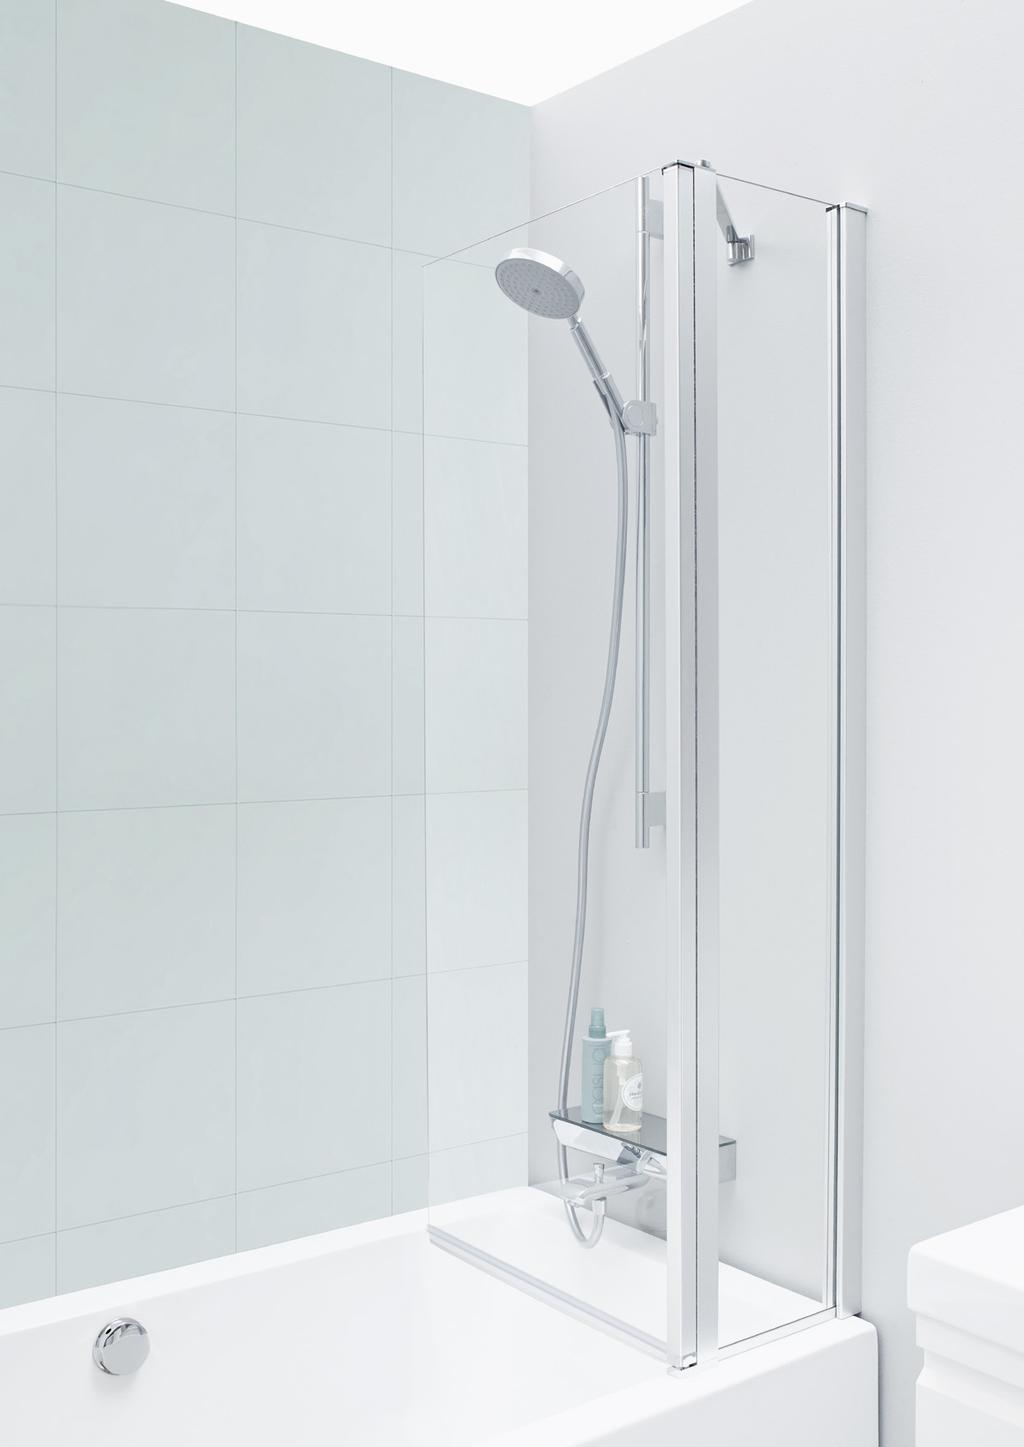 DANSANI DUSJ / UNIQ Fleksibel frihet UNIQ 3102 er en helt enkel avskjerming til badekar, og den gjemmer på en praktisk hemmelighet. Åpningsmekanismen er hengslet på et glasspanel montert på veggen.